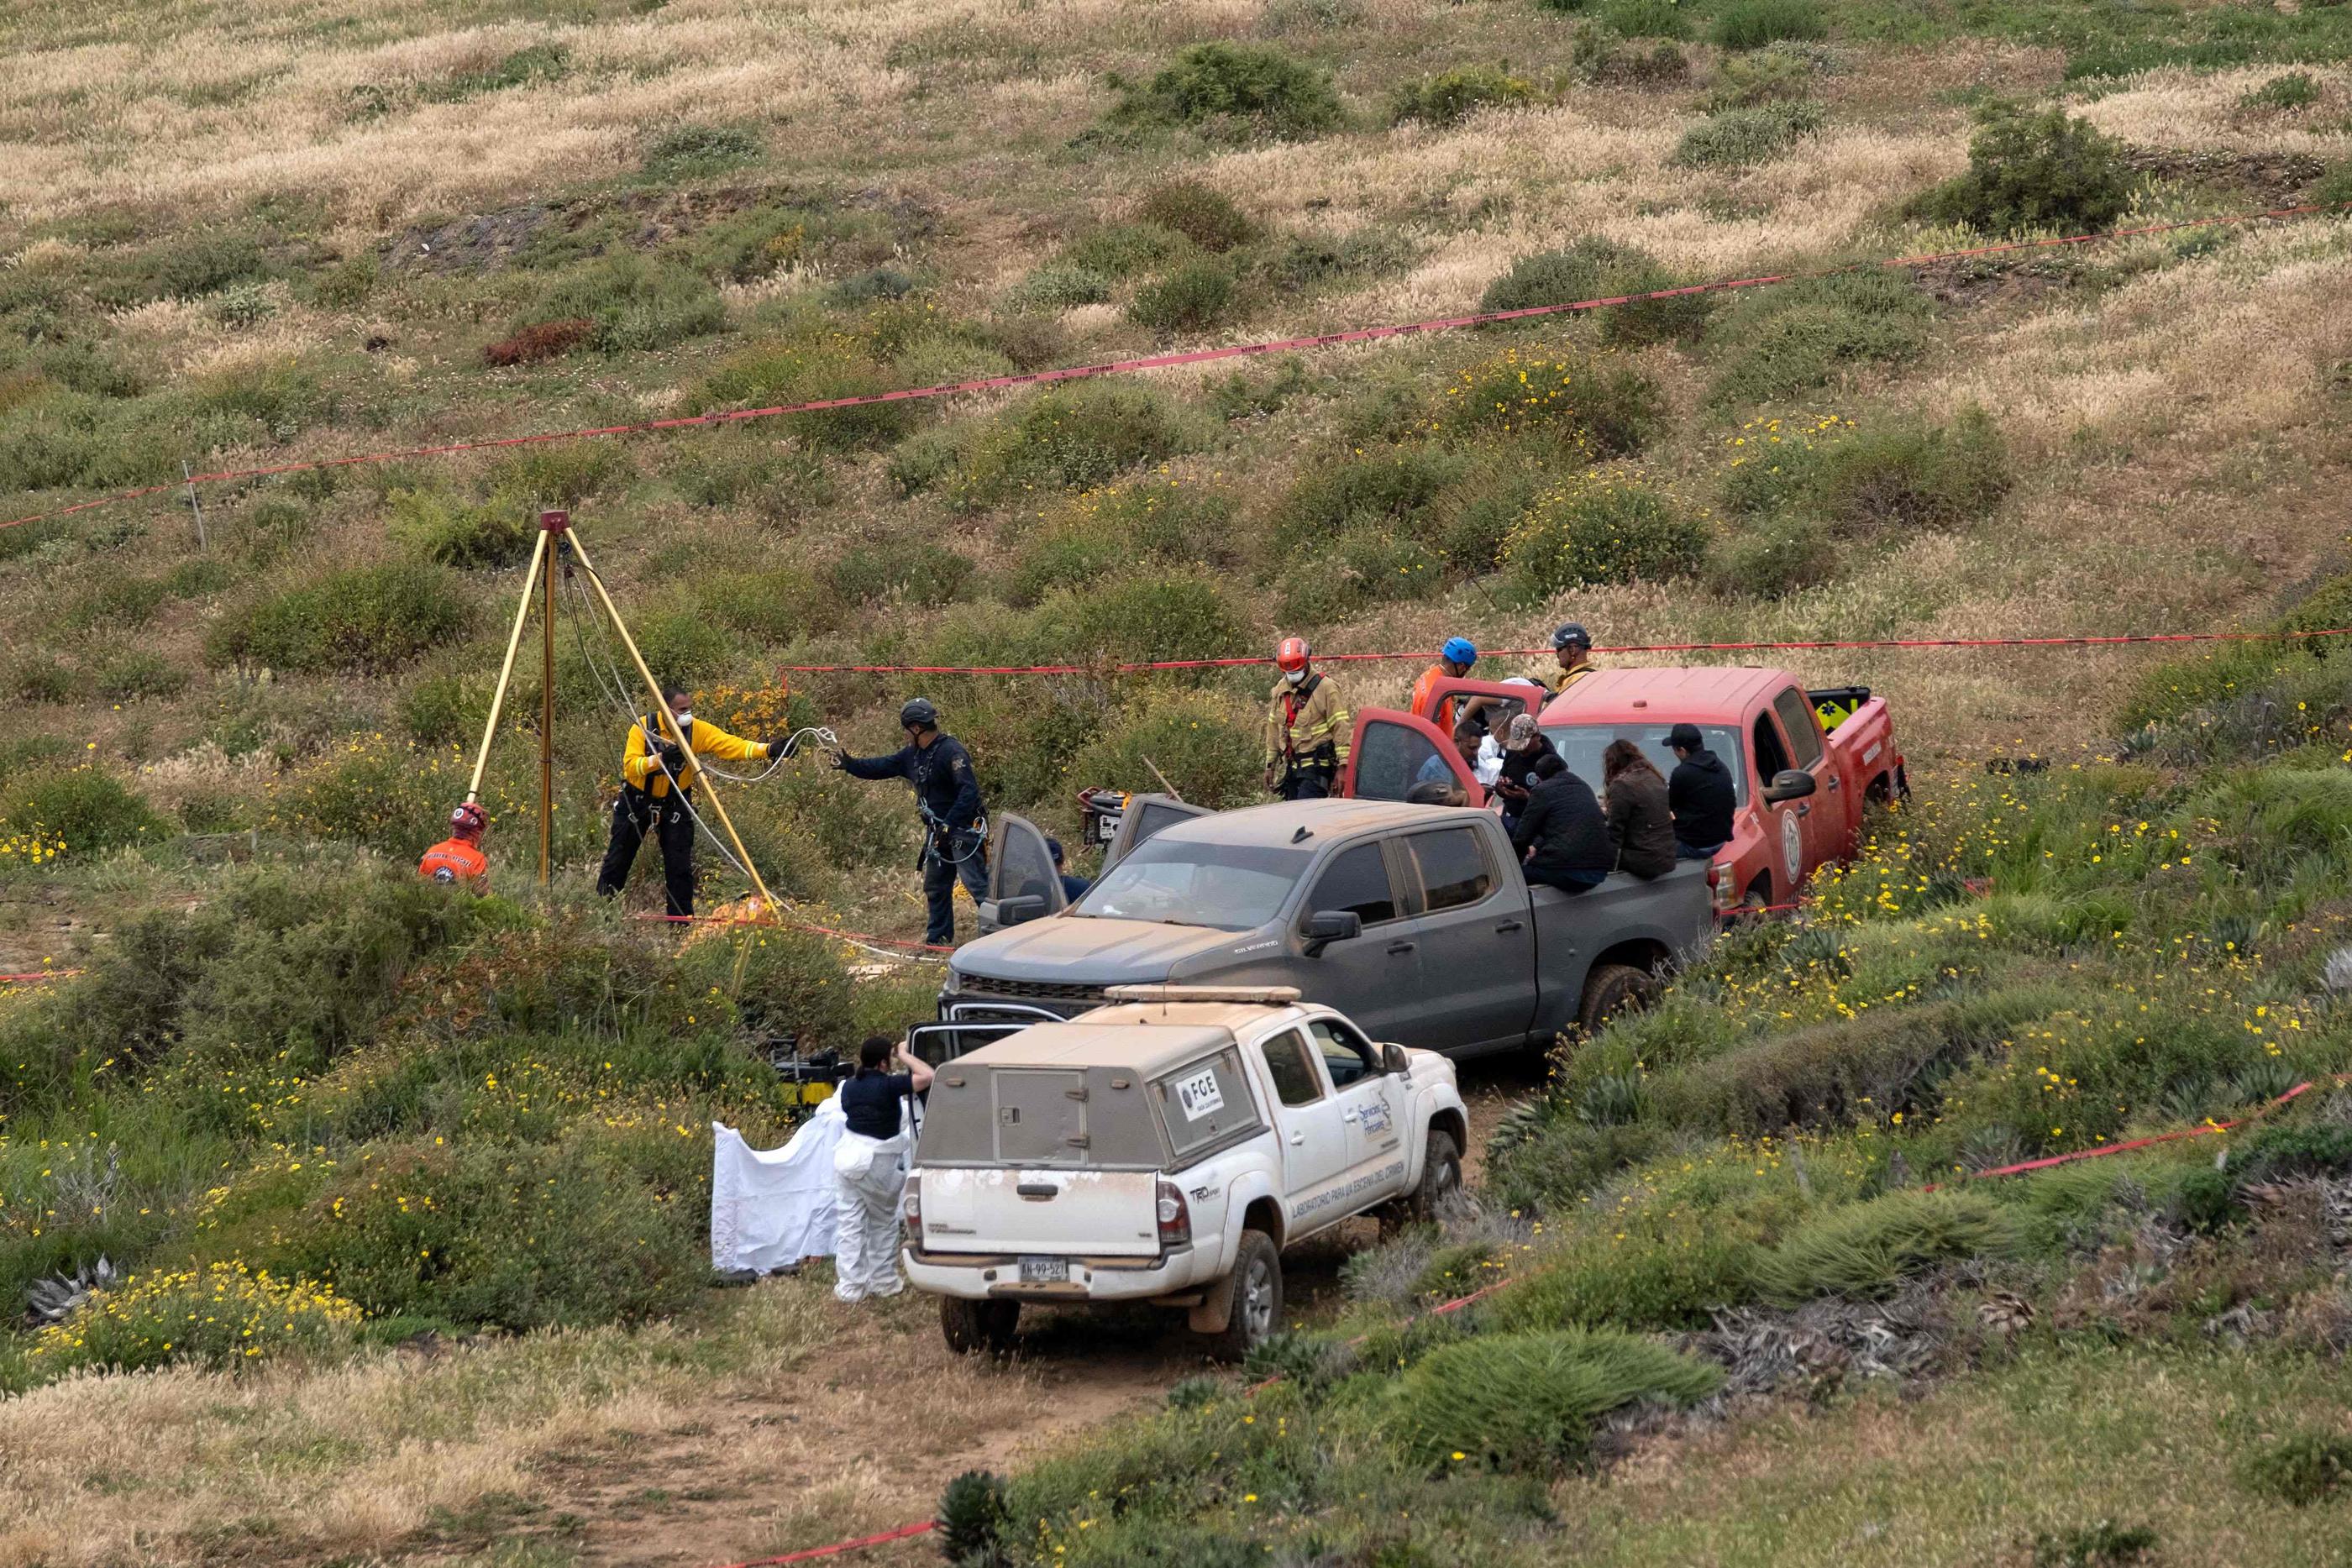 Les trois corps ont été découverts en "état de décomposition" au fond d'un puits à la Bocana, non loin d’Ensenada au Mexique. (Guillermo Arias / AFP)